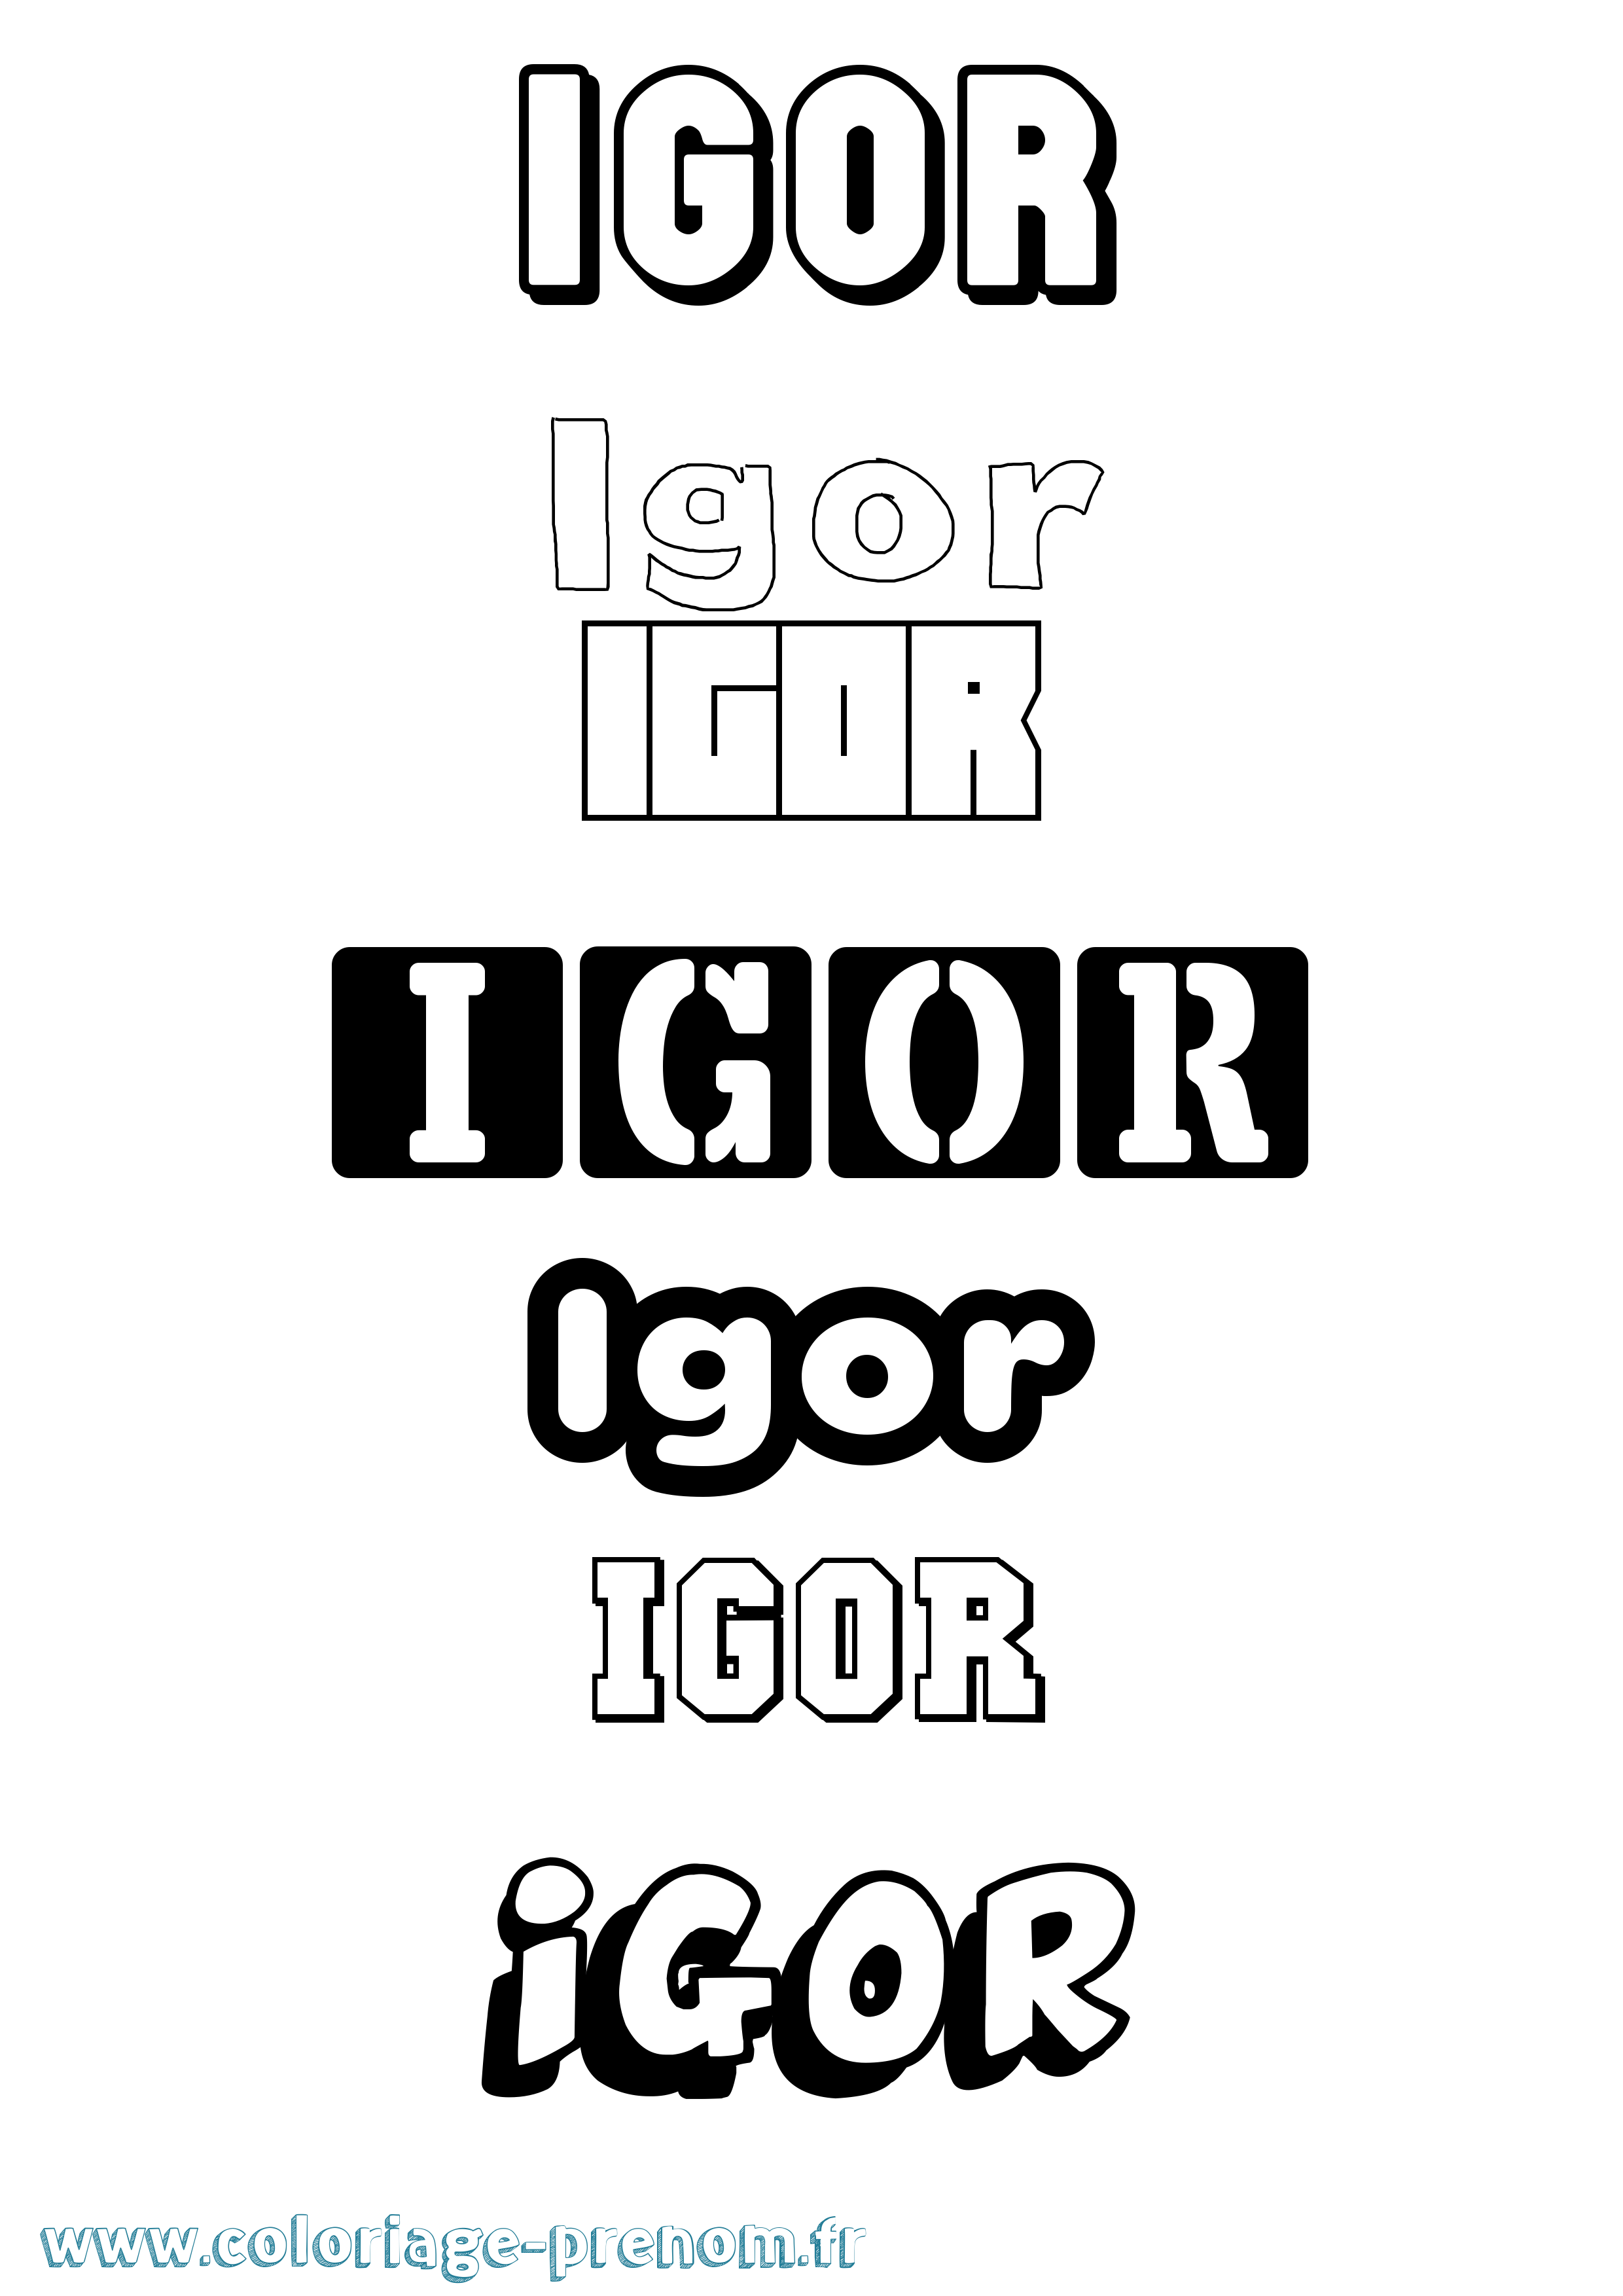 Coloriage prénom Igor